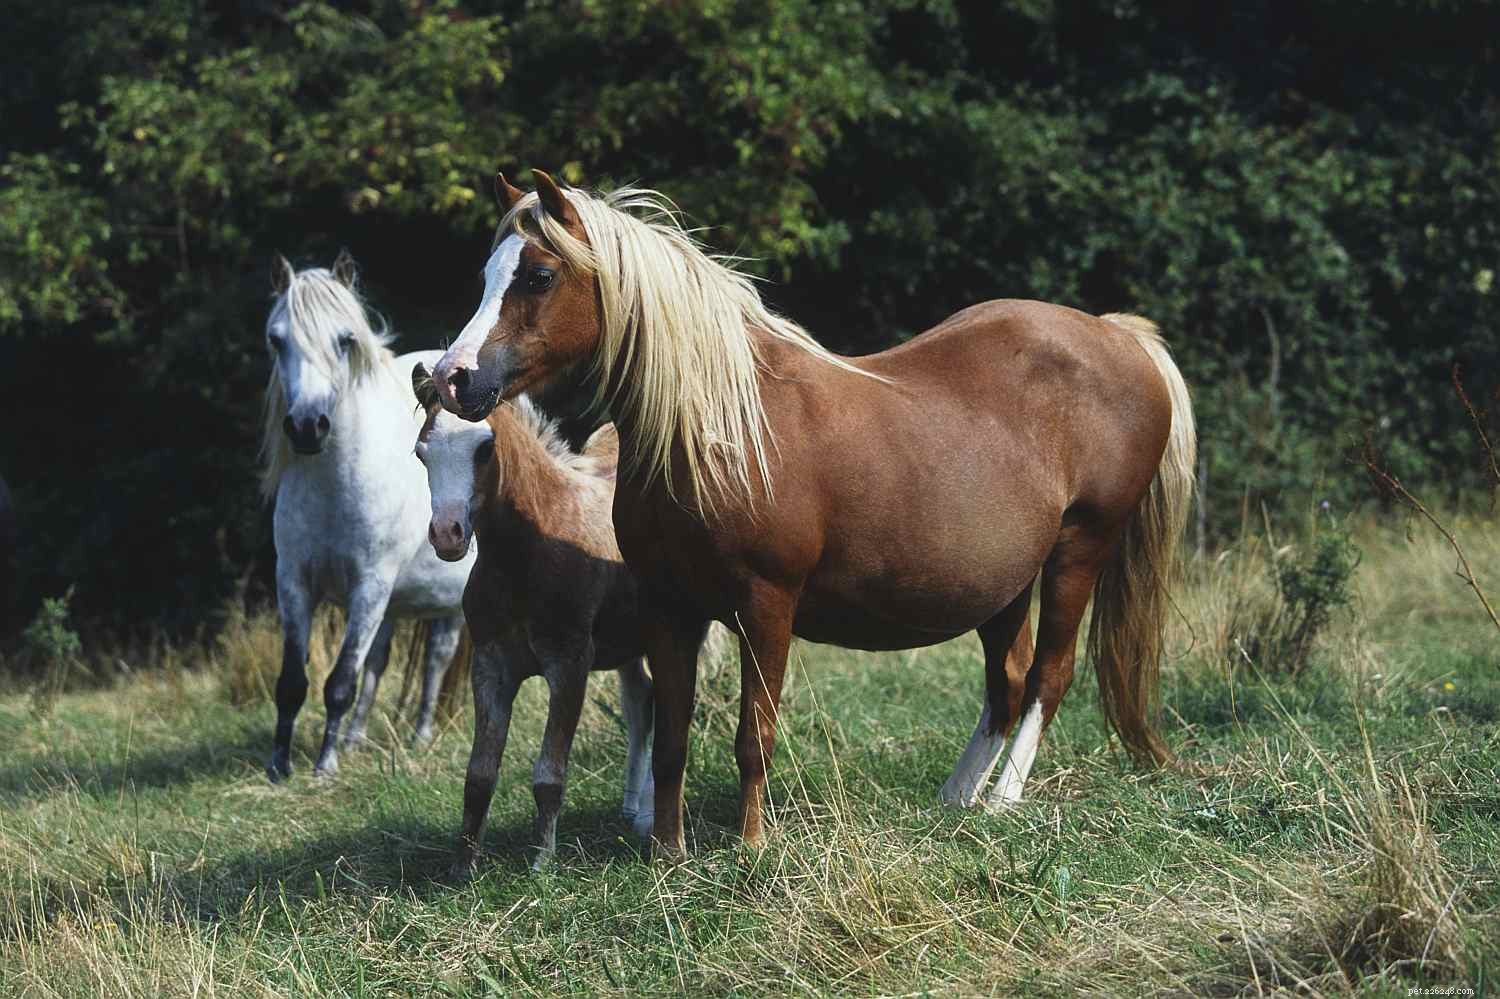 En bildguide till de olika delarna av en häst